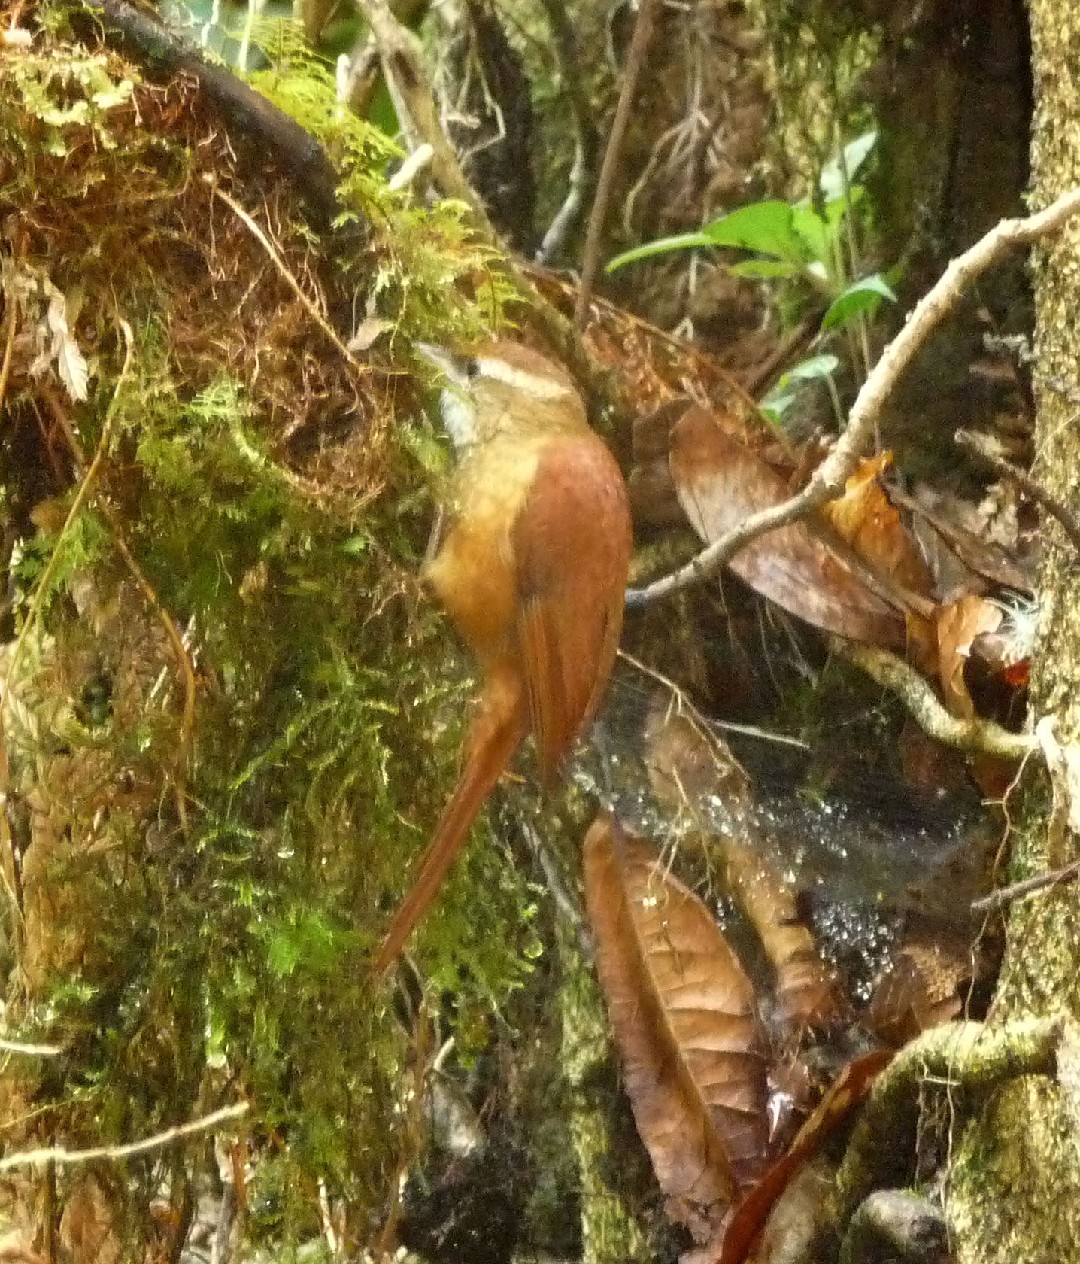 赤黃爬樹雀 (Margarornis rubiginosus)